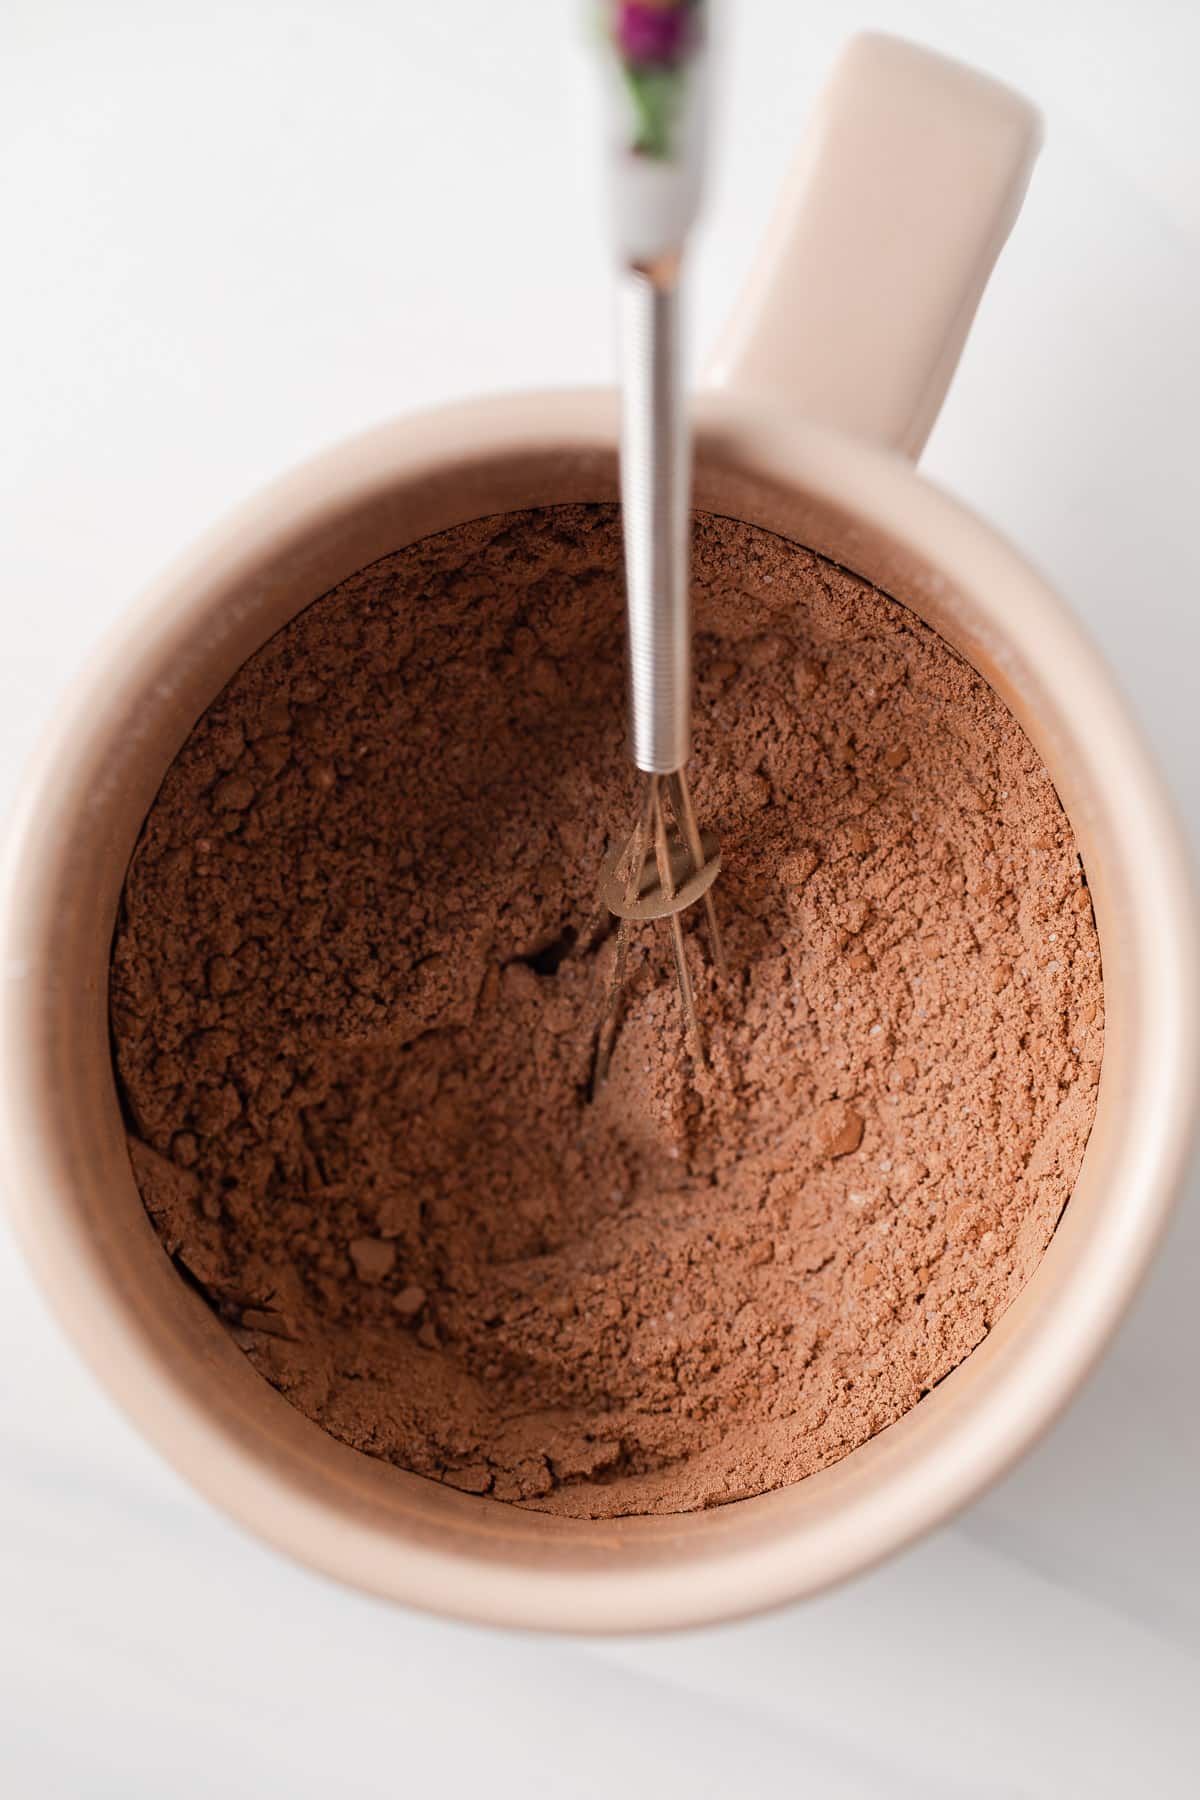 Dry ingredients for brownies in a mug.